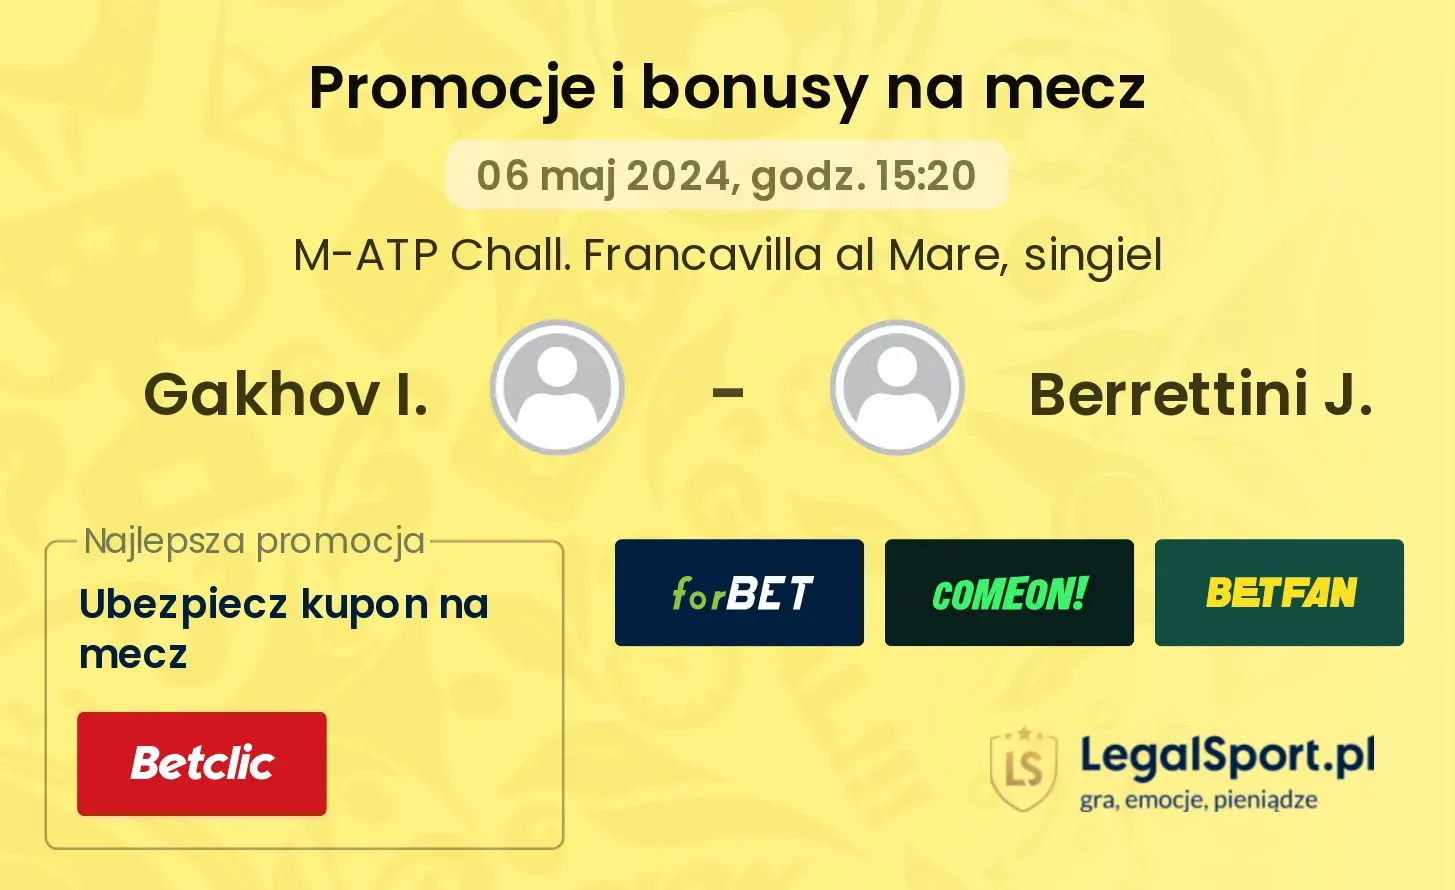 Gakhov I. - Berrettini J. promocje bonusy na mecz